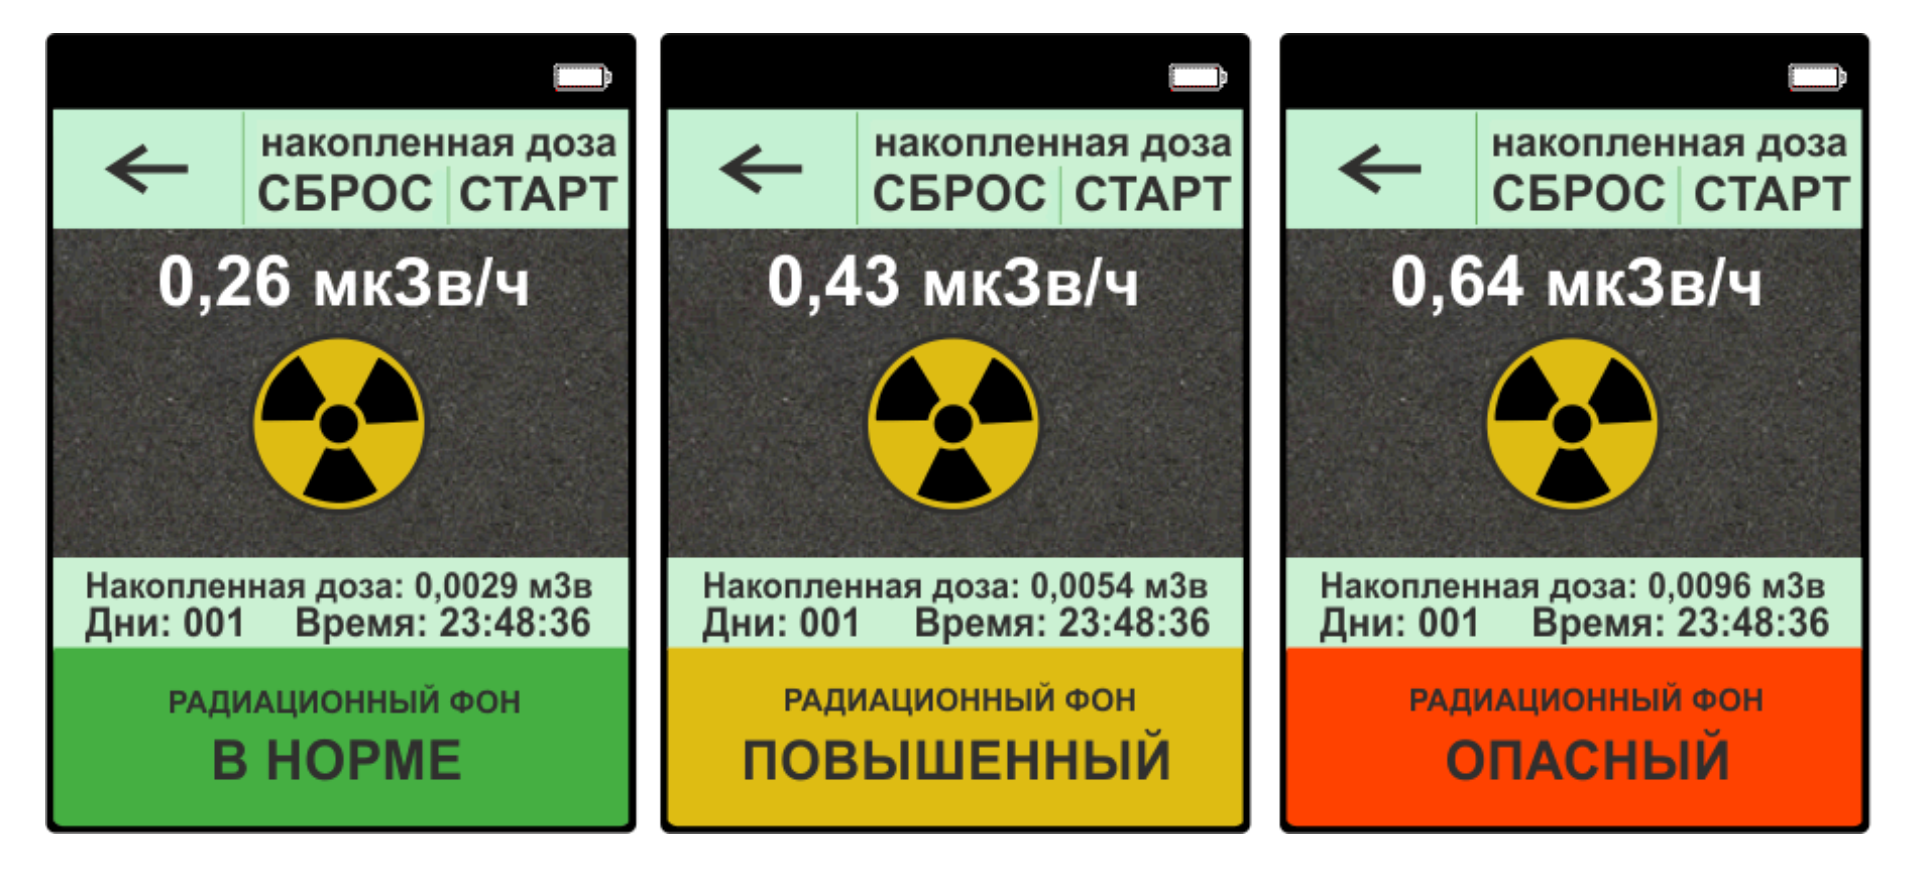 Норма радиации в мкр ч. Уровень радиационного фона норма. Нормы радиационного фона в микрозивертах. Дозиметр таблица допустимой радиации. Норма радиационного фона МКЗВ/Ч для человека.